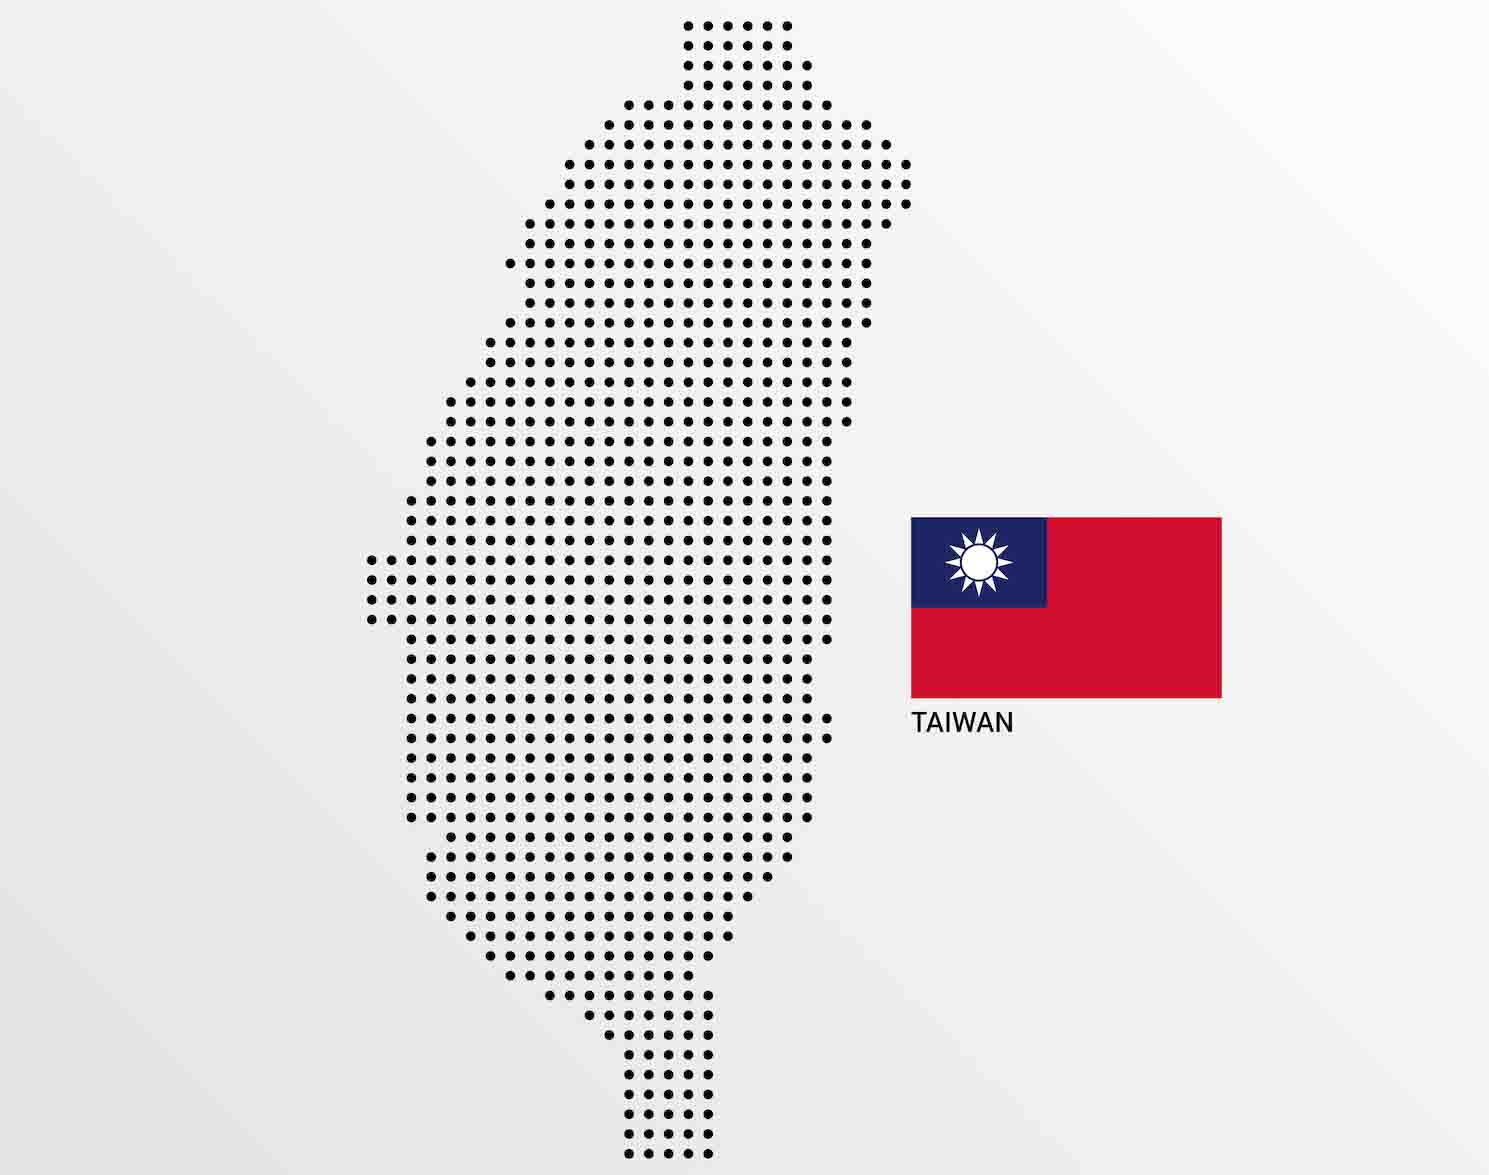 中華民國與臺灣的和解，「一中各表」的文字遊戲何時結束？